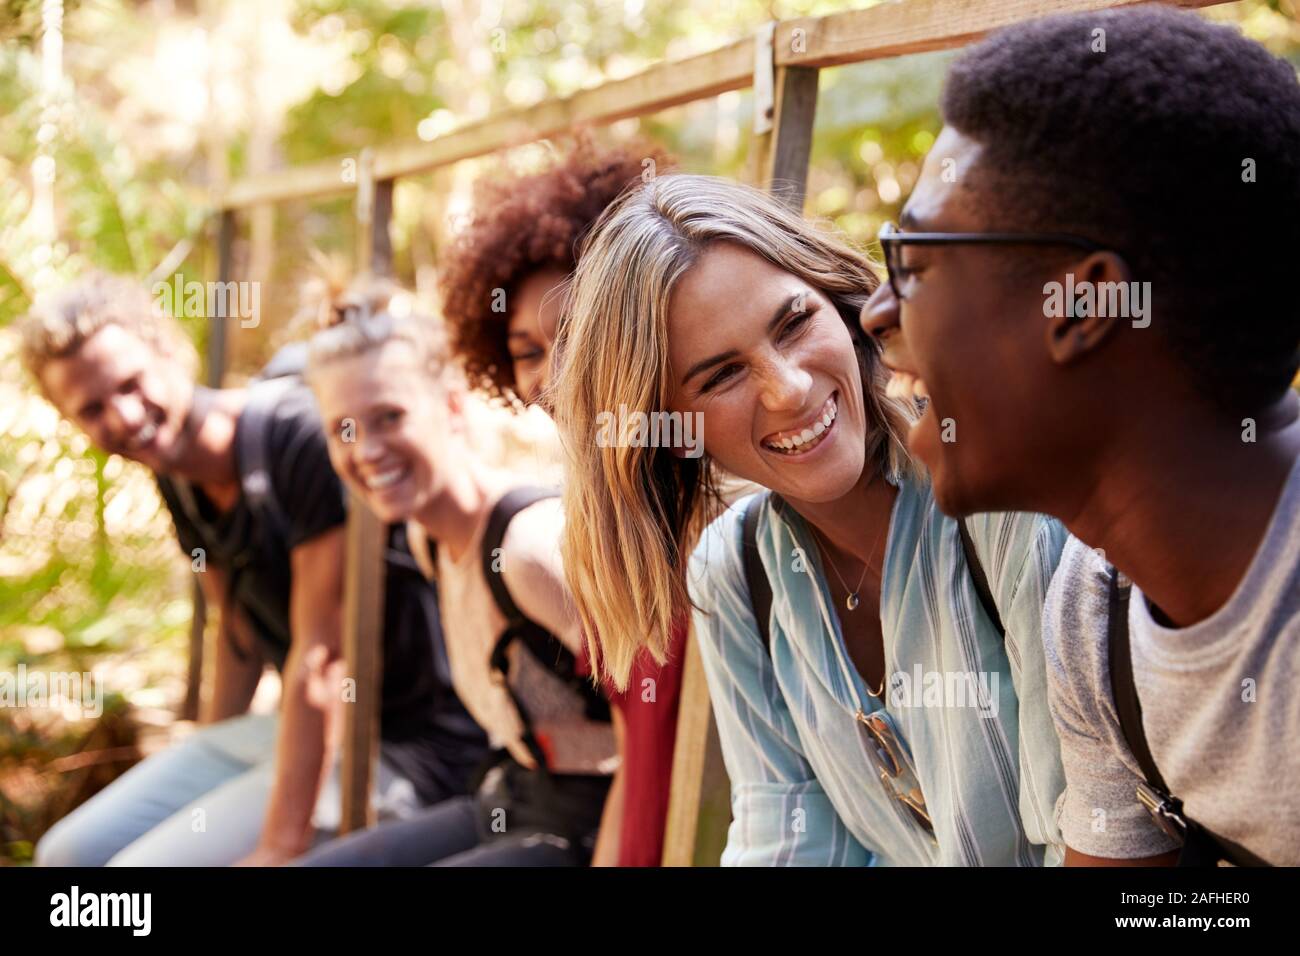 Cinco jóvenes amigos adultos en una caminata, sentados juntos hablando durante un descanso, cerrar Foto de stock